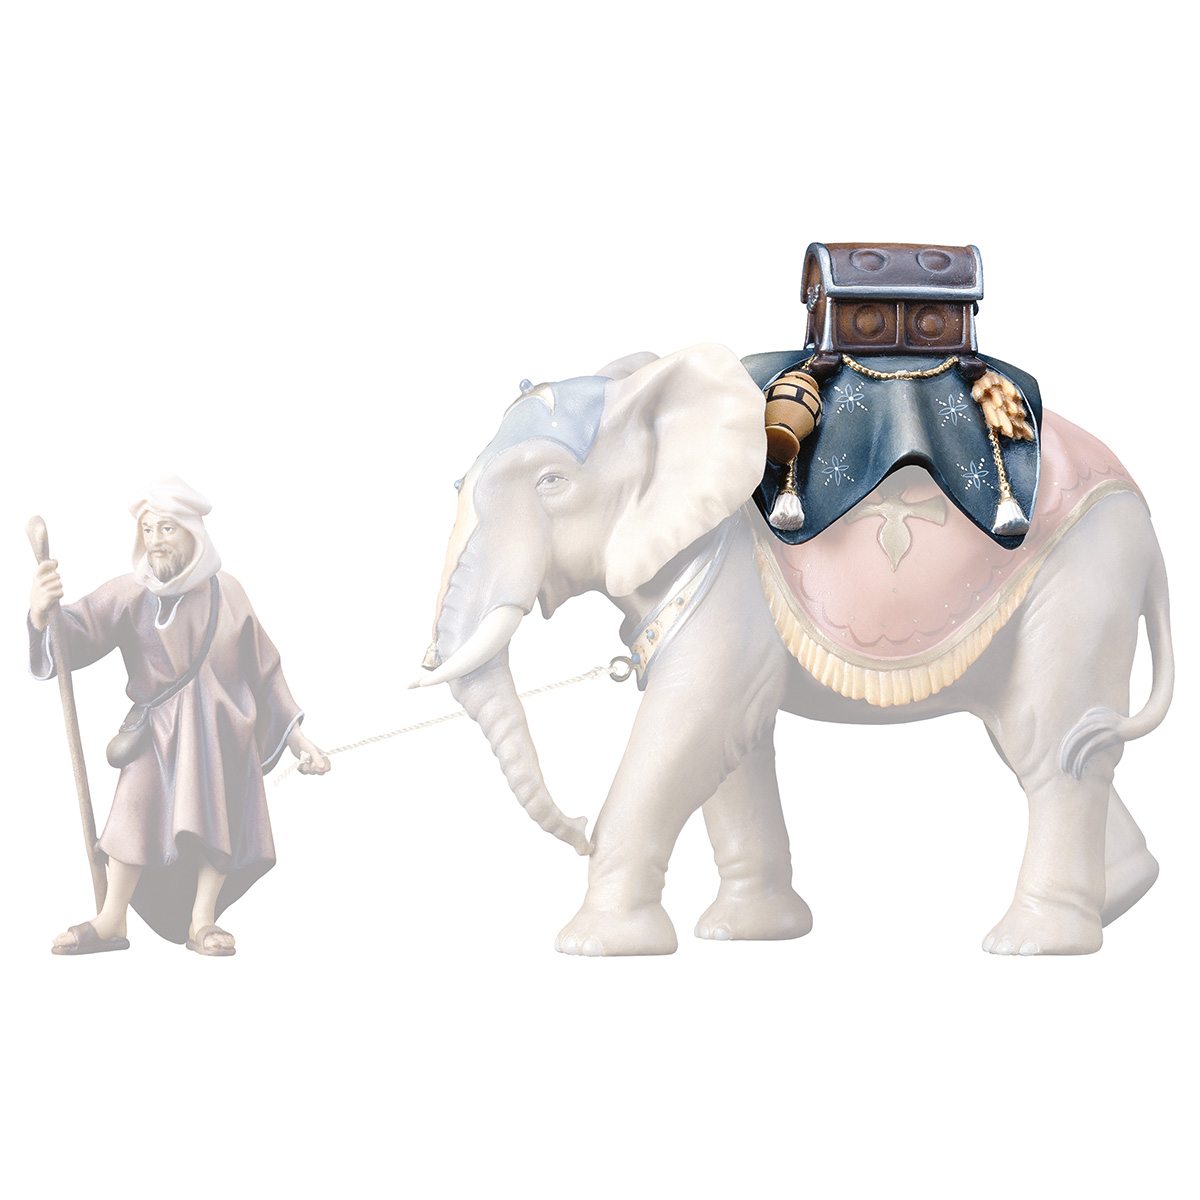 Gepäcksattel (passend zu Elefant stehend)